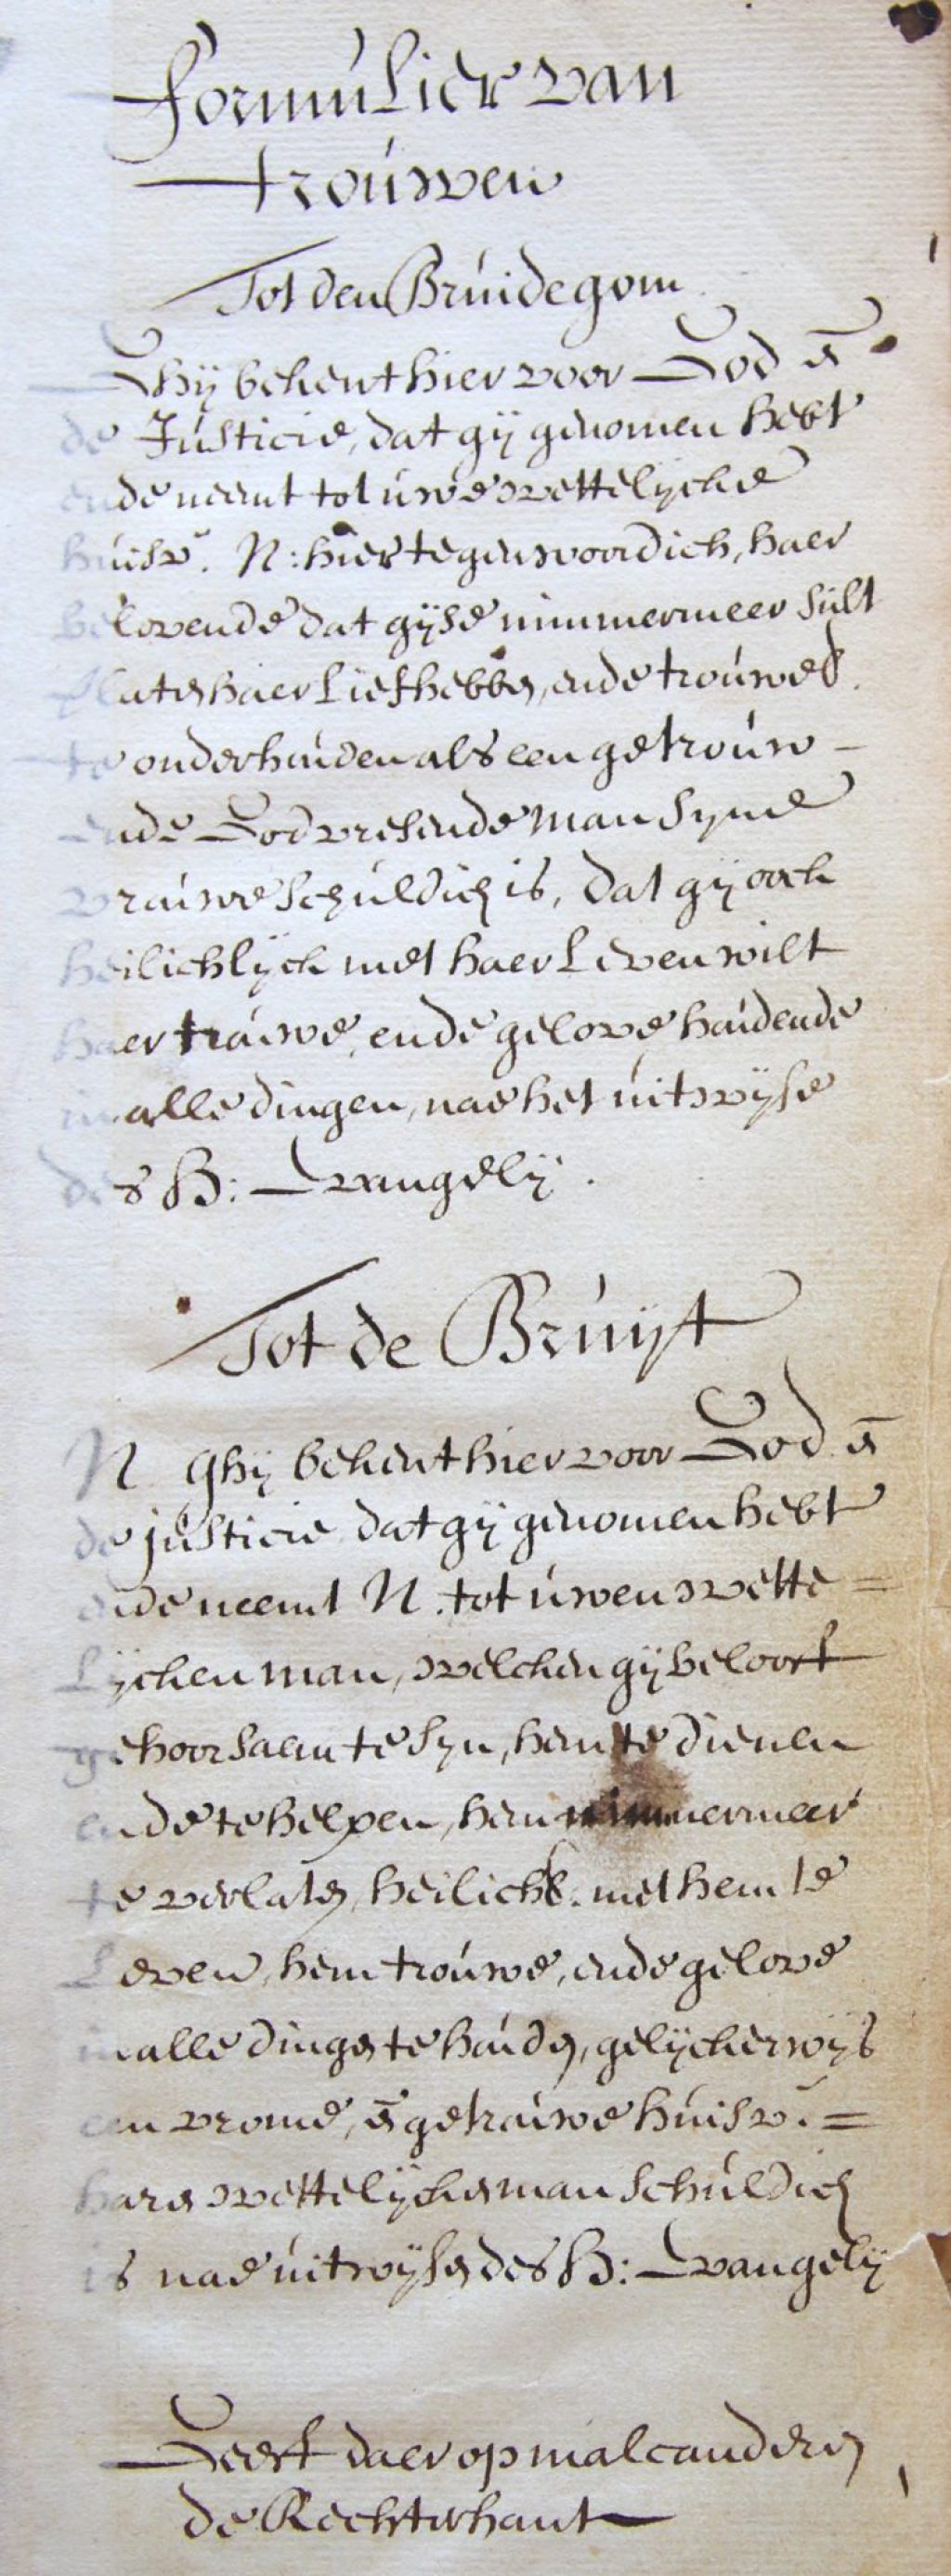 Formulier voor een huwelijk ten overstaan van de burgemeesters, 1575. (Archief 1, inv.nr 2565)